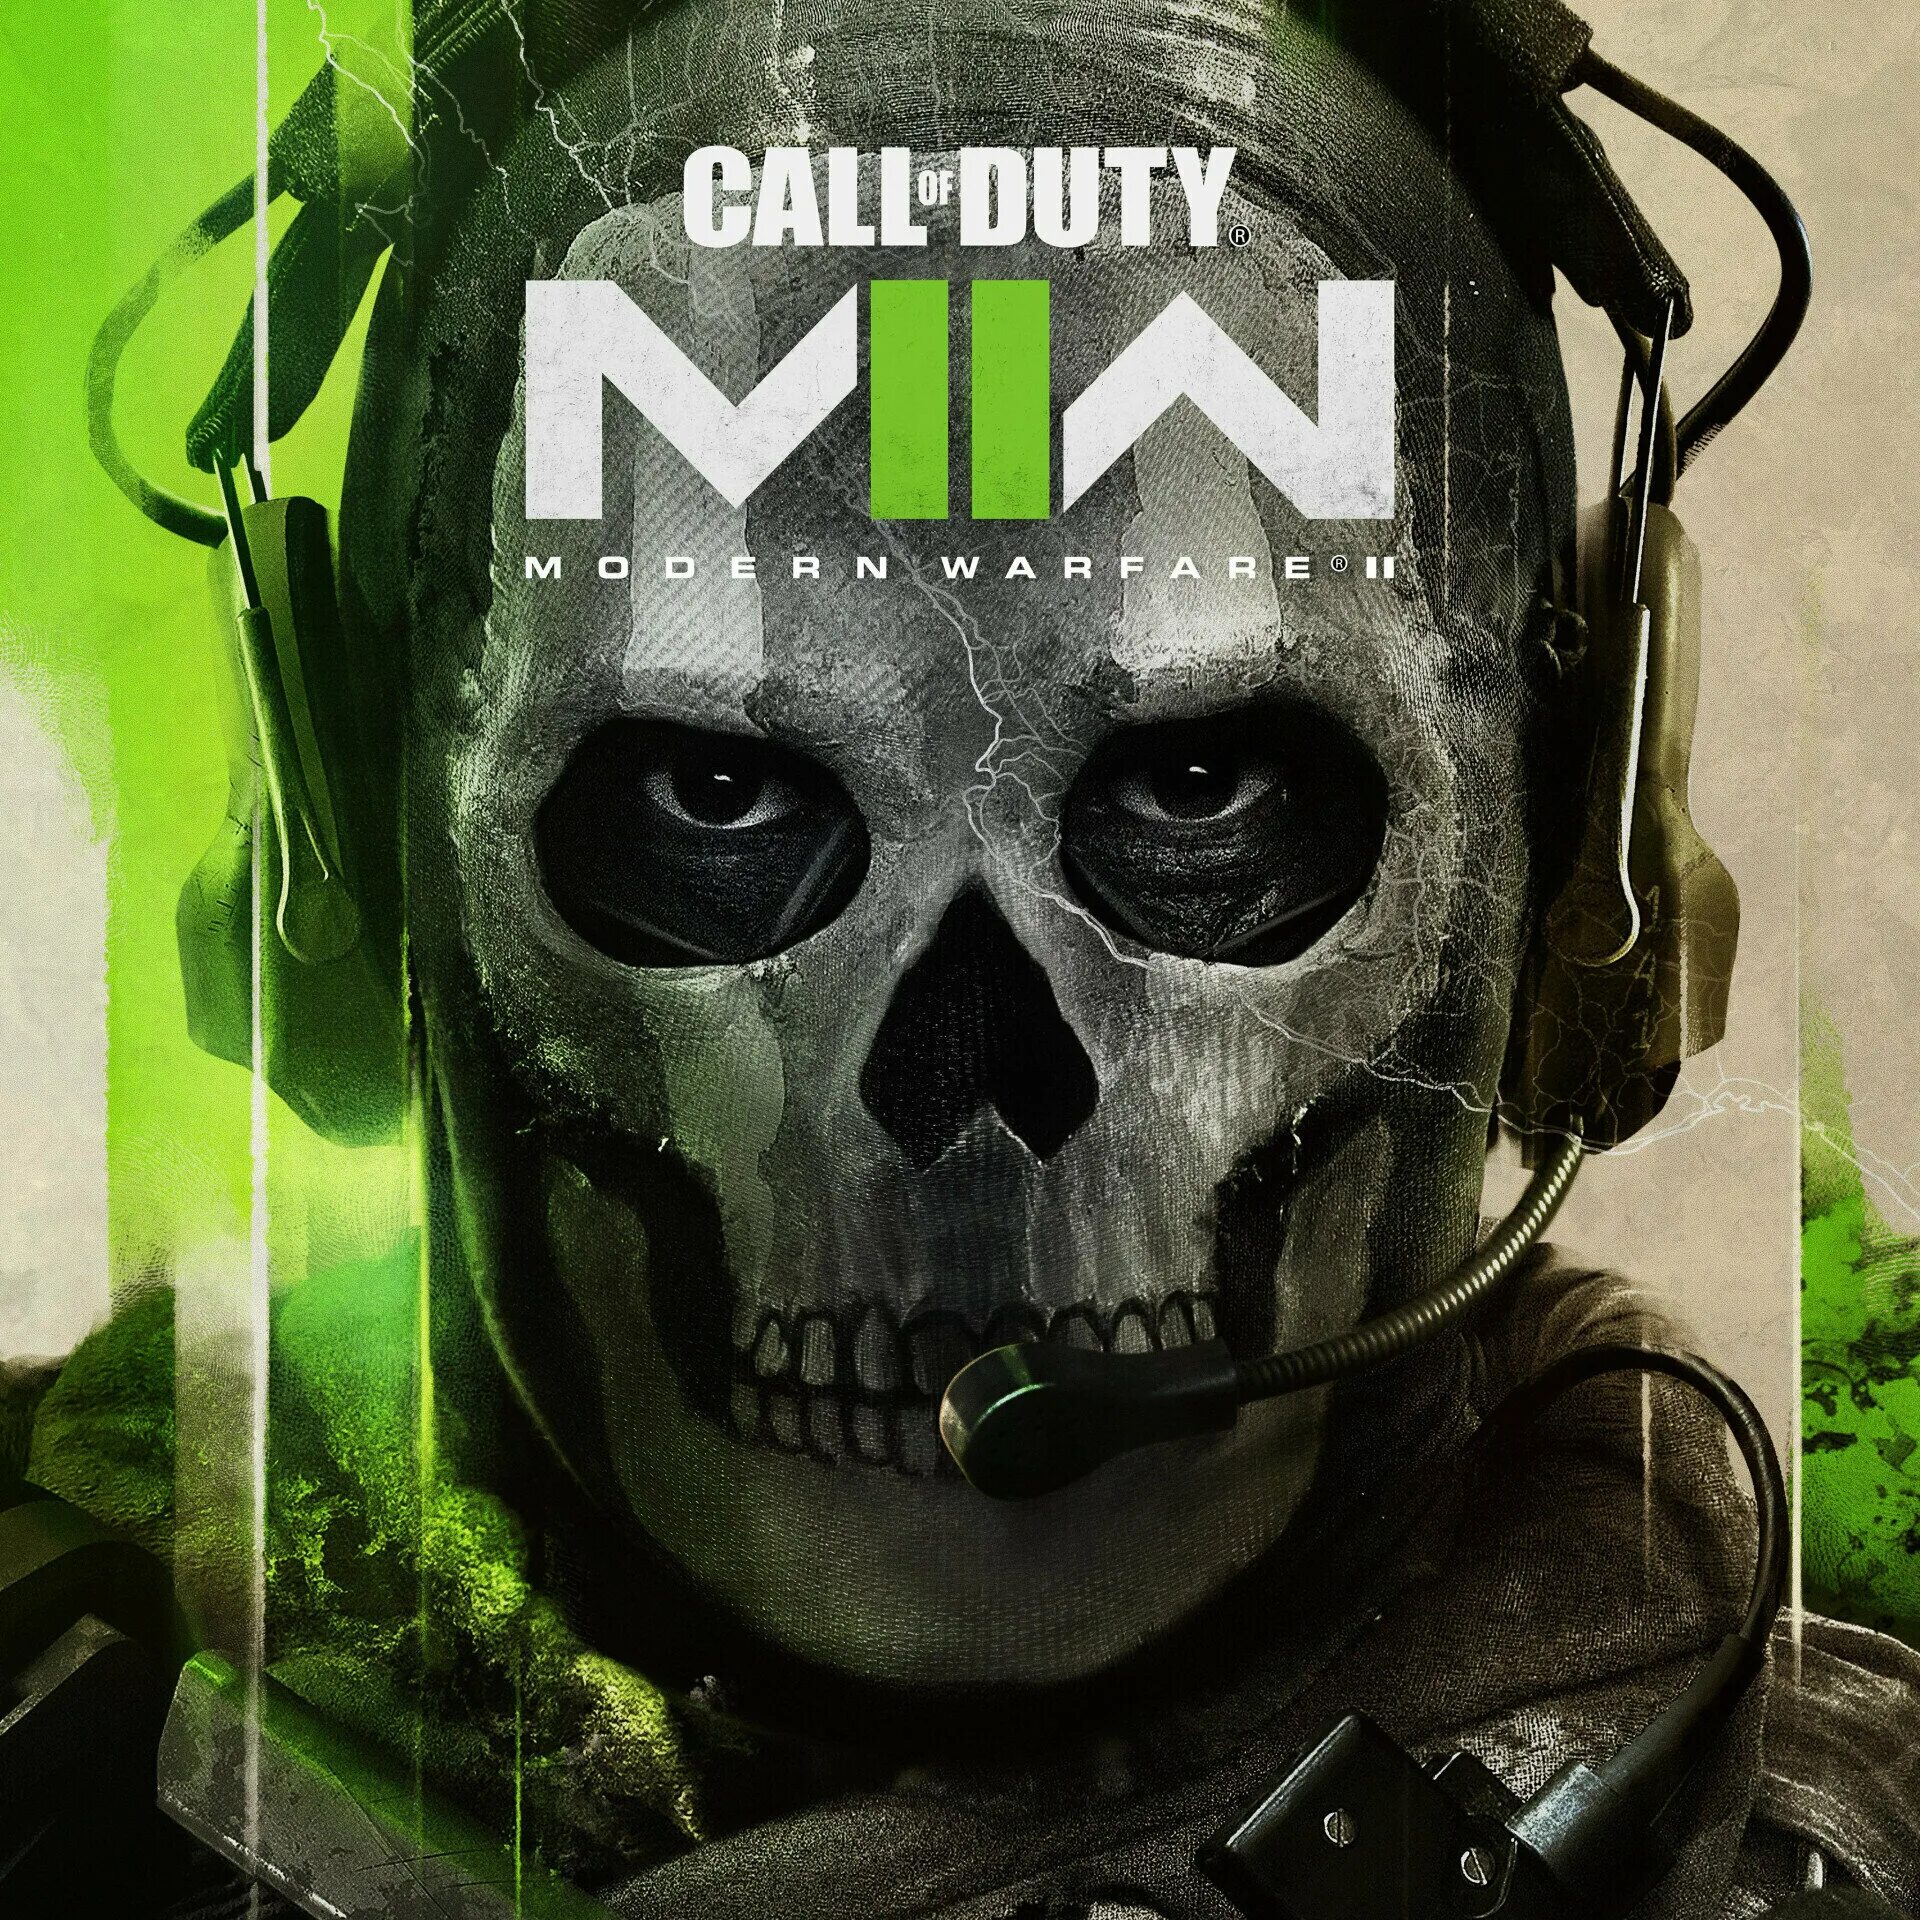 Call of Duty mw2 2022. Call of Duty Modern Warfare 2022. Call of Duty: Modern Warfare II (2022). Call of Duty Modern Warfare 2 2022.